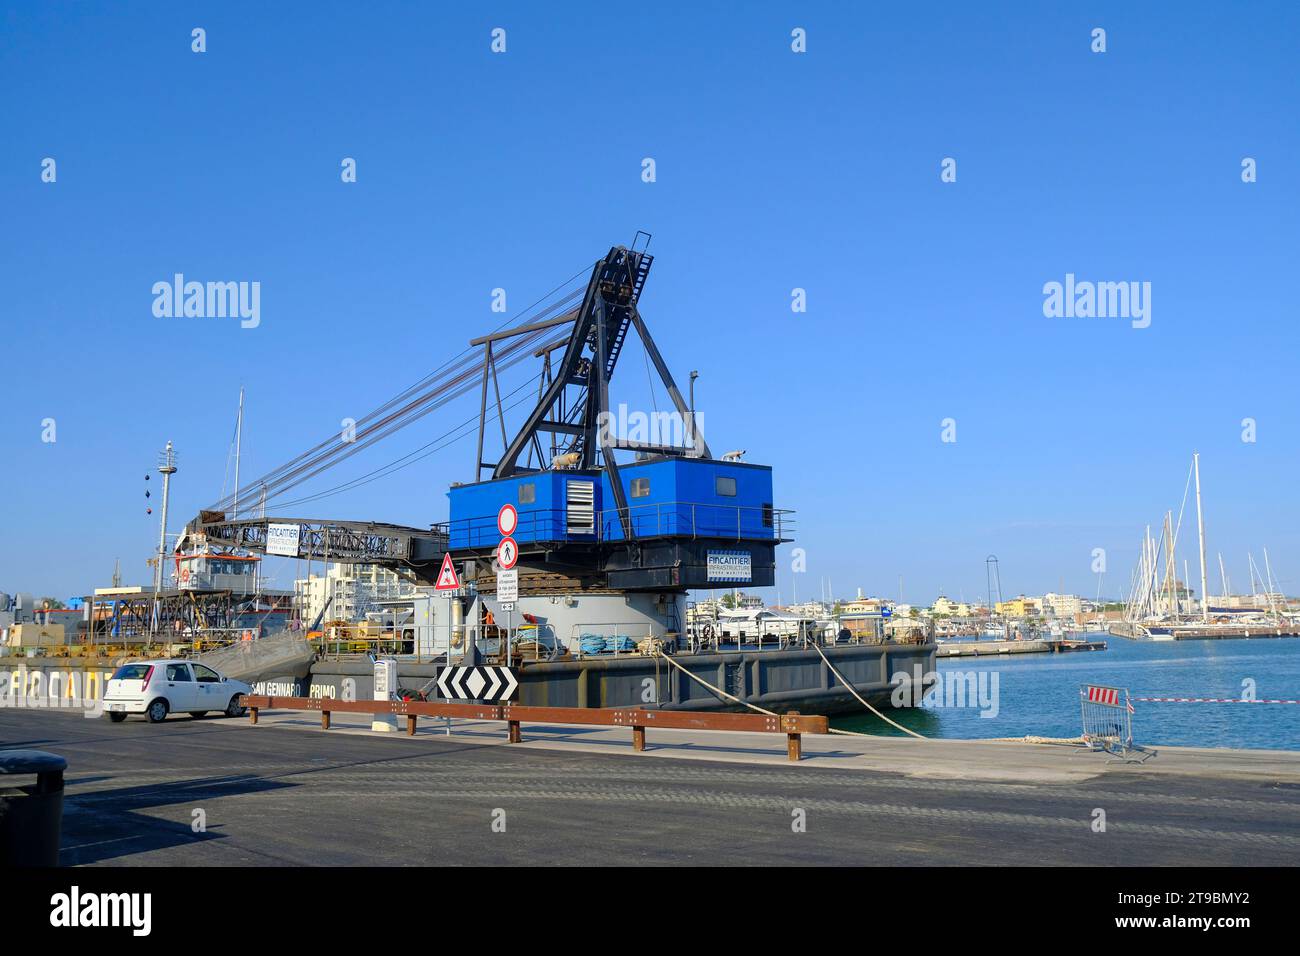 Juillet 2023 Rimini, Italie : grue de navire bleu gros plan dans la marina de Rimini à travers les bateaux et les navires sur le port Banque D'Images